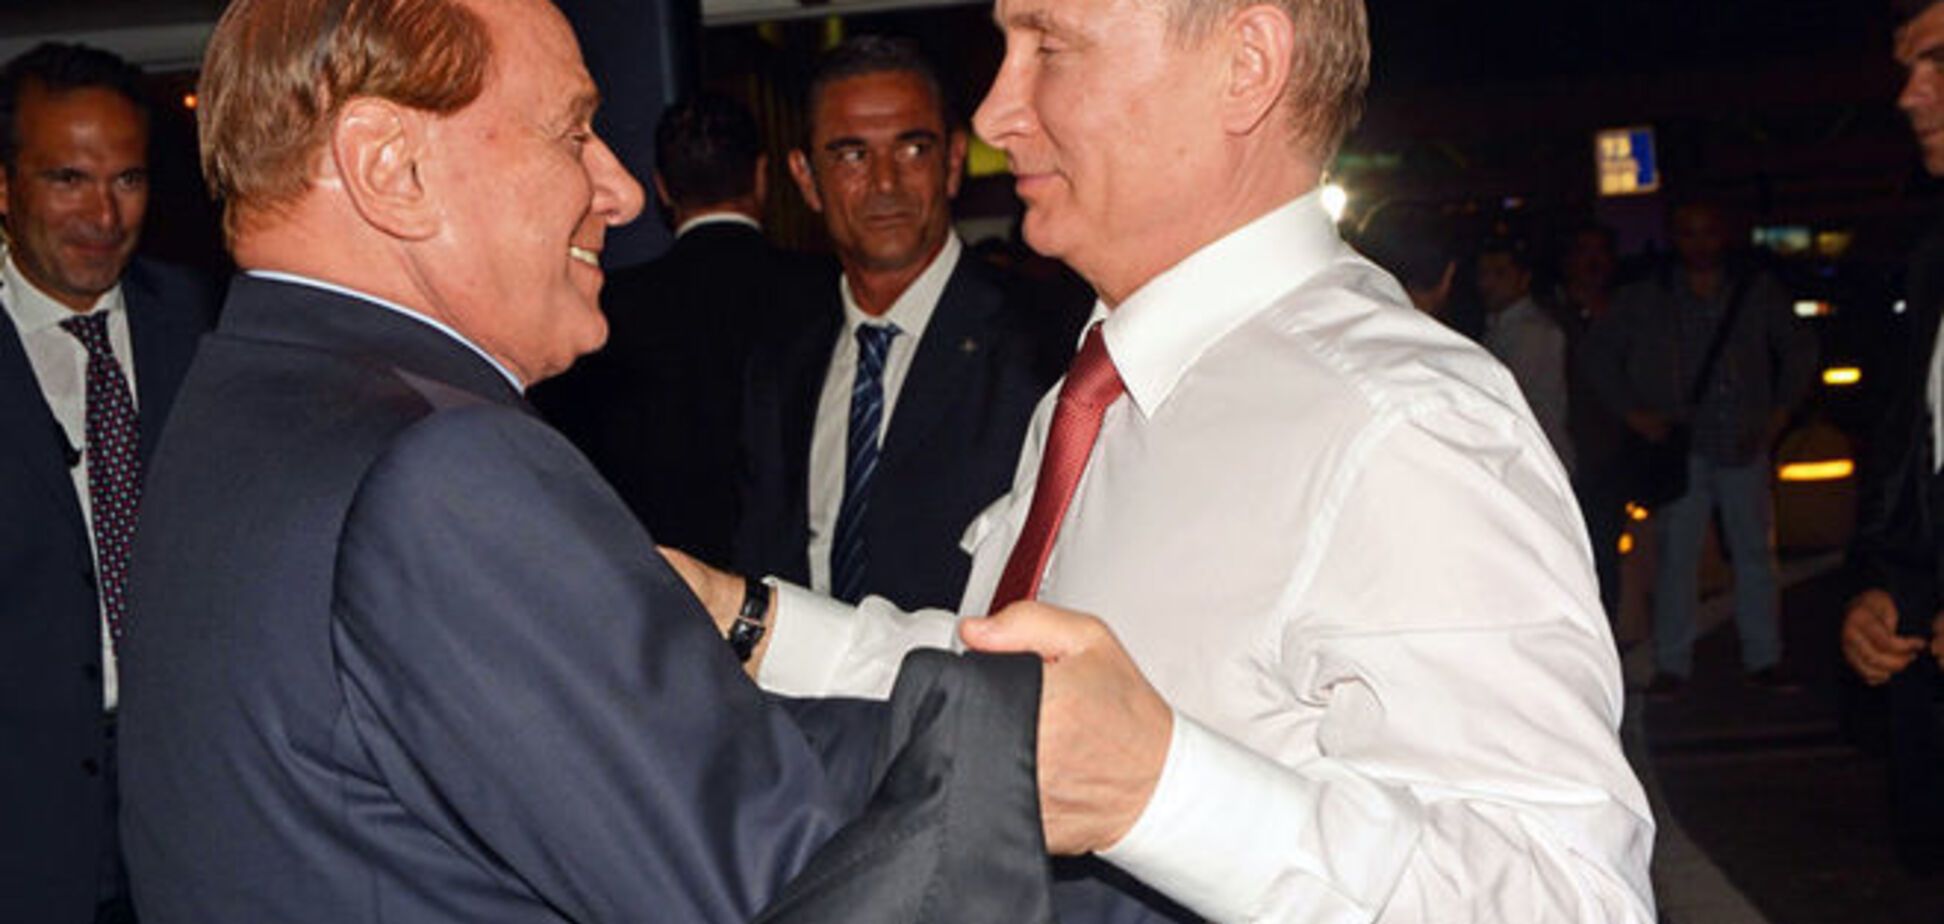 Стану министром в России: Берлускони проговорился о заманчивом предложении 'своего друга Путина' - СМИ